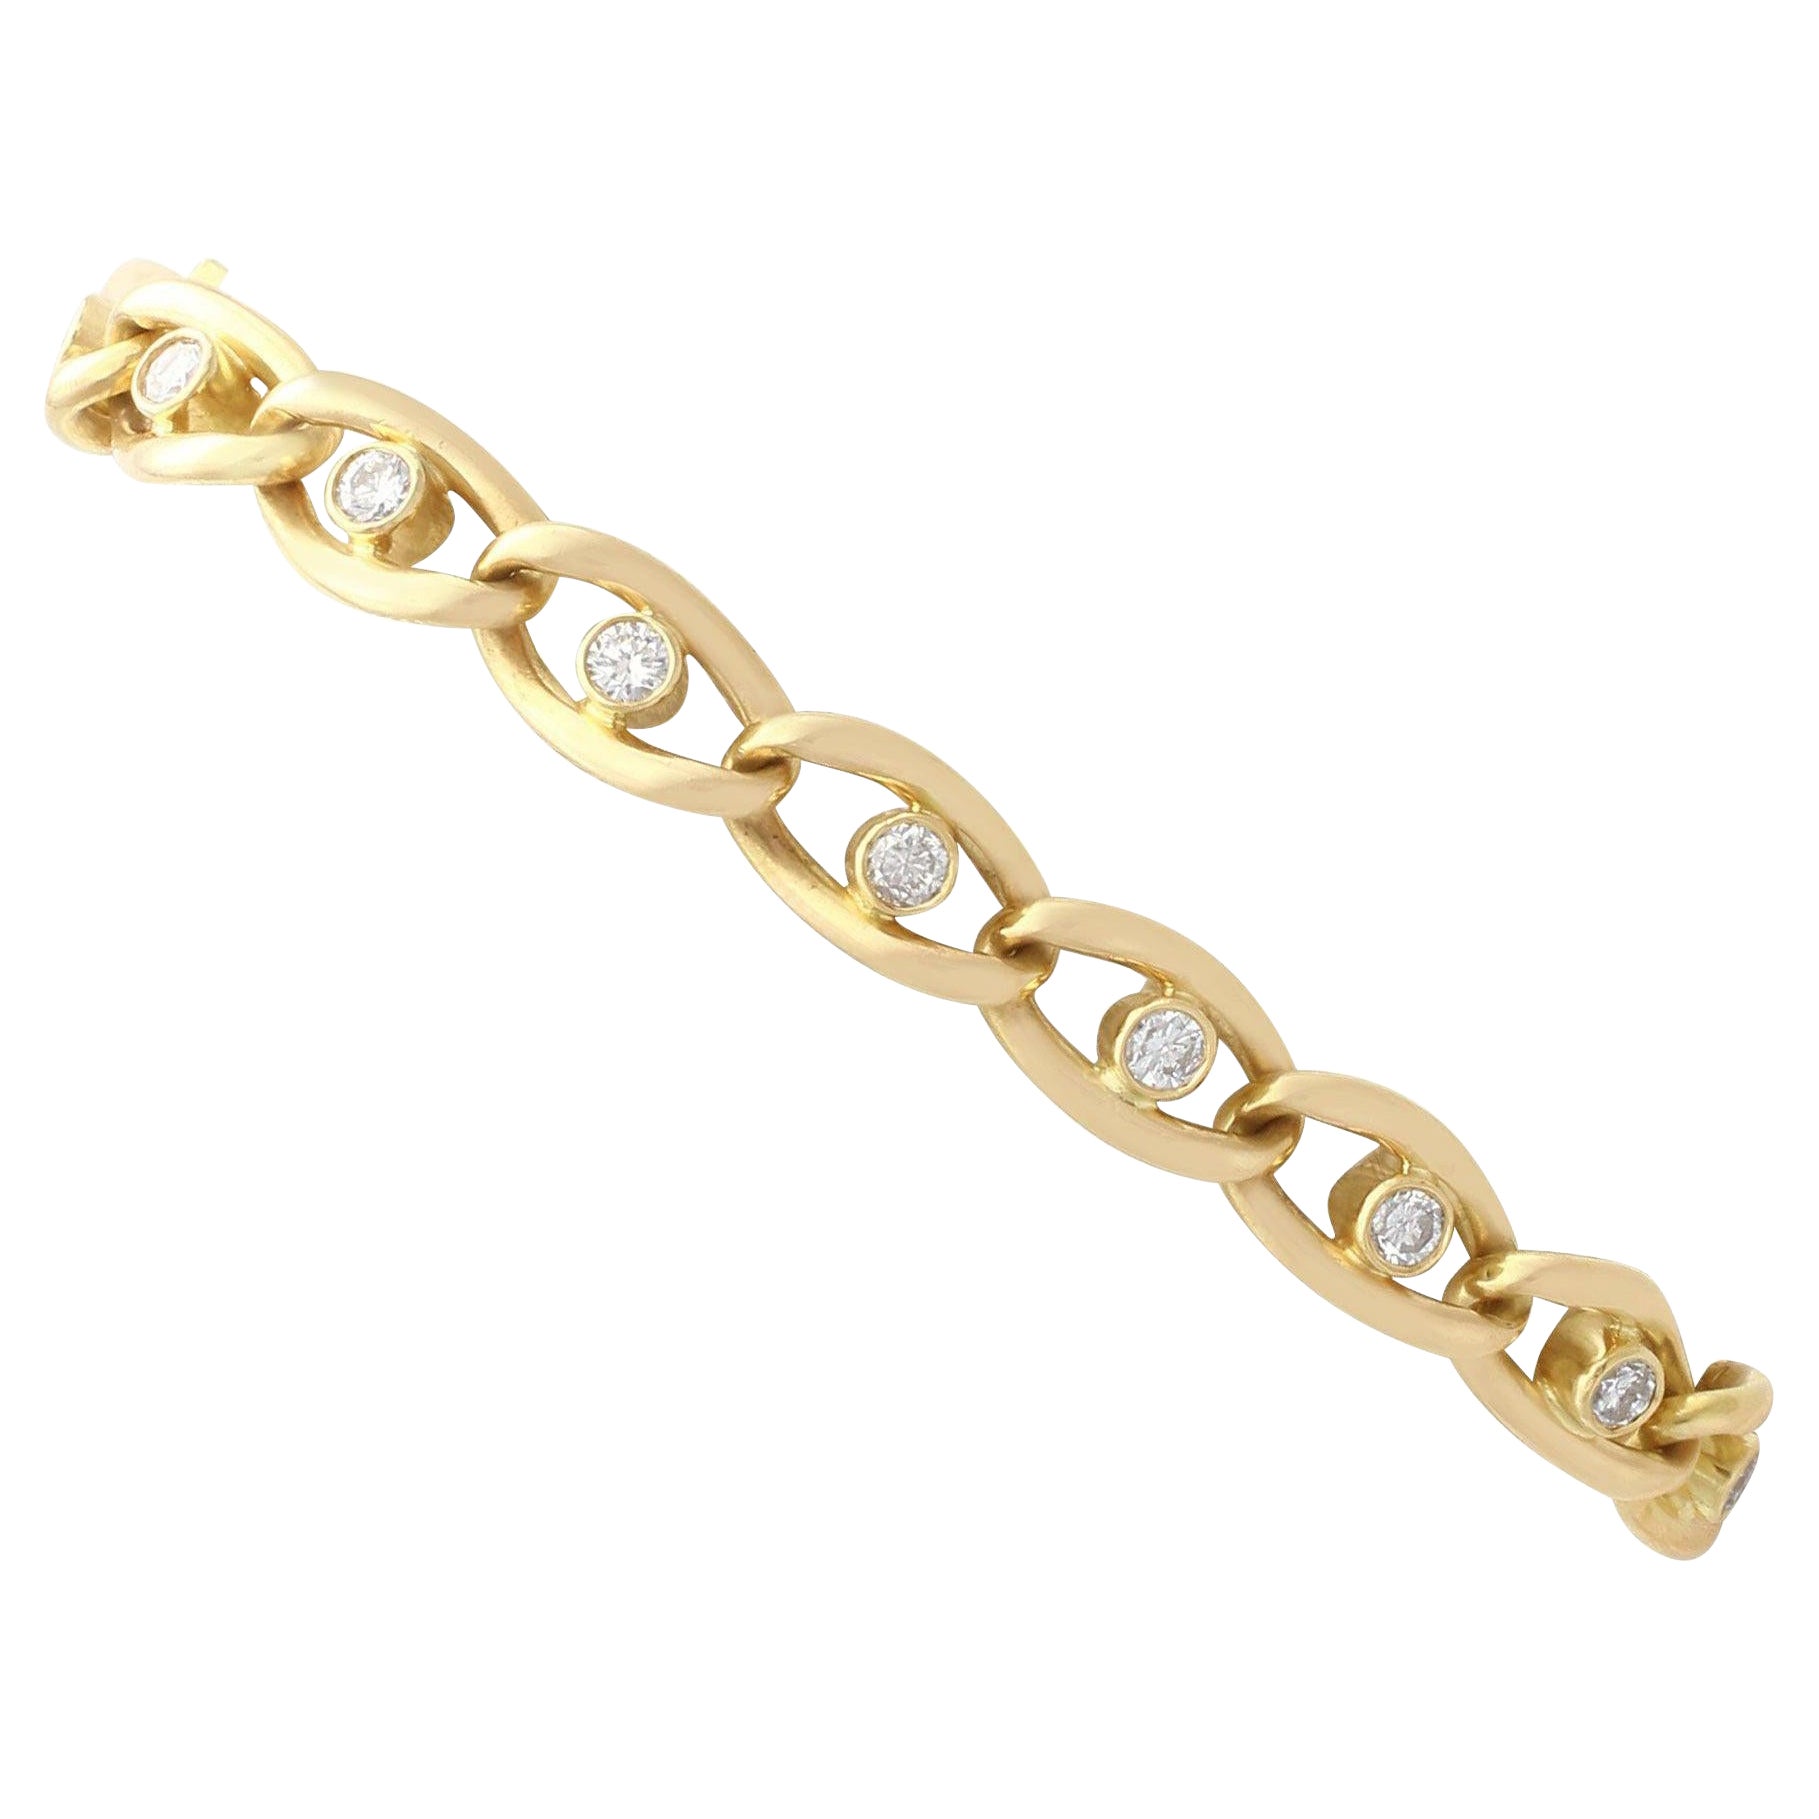 Bracelet boucle d'oreille vintage en or jaune et diamants 1,22 carat, années 1960